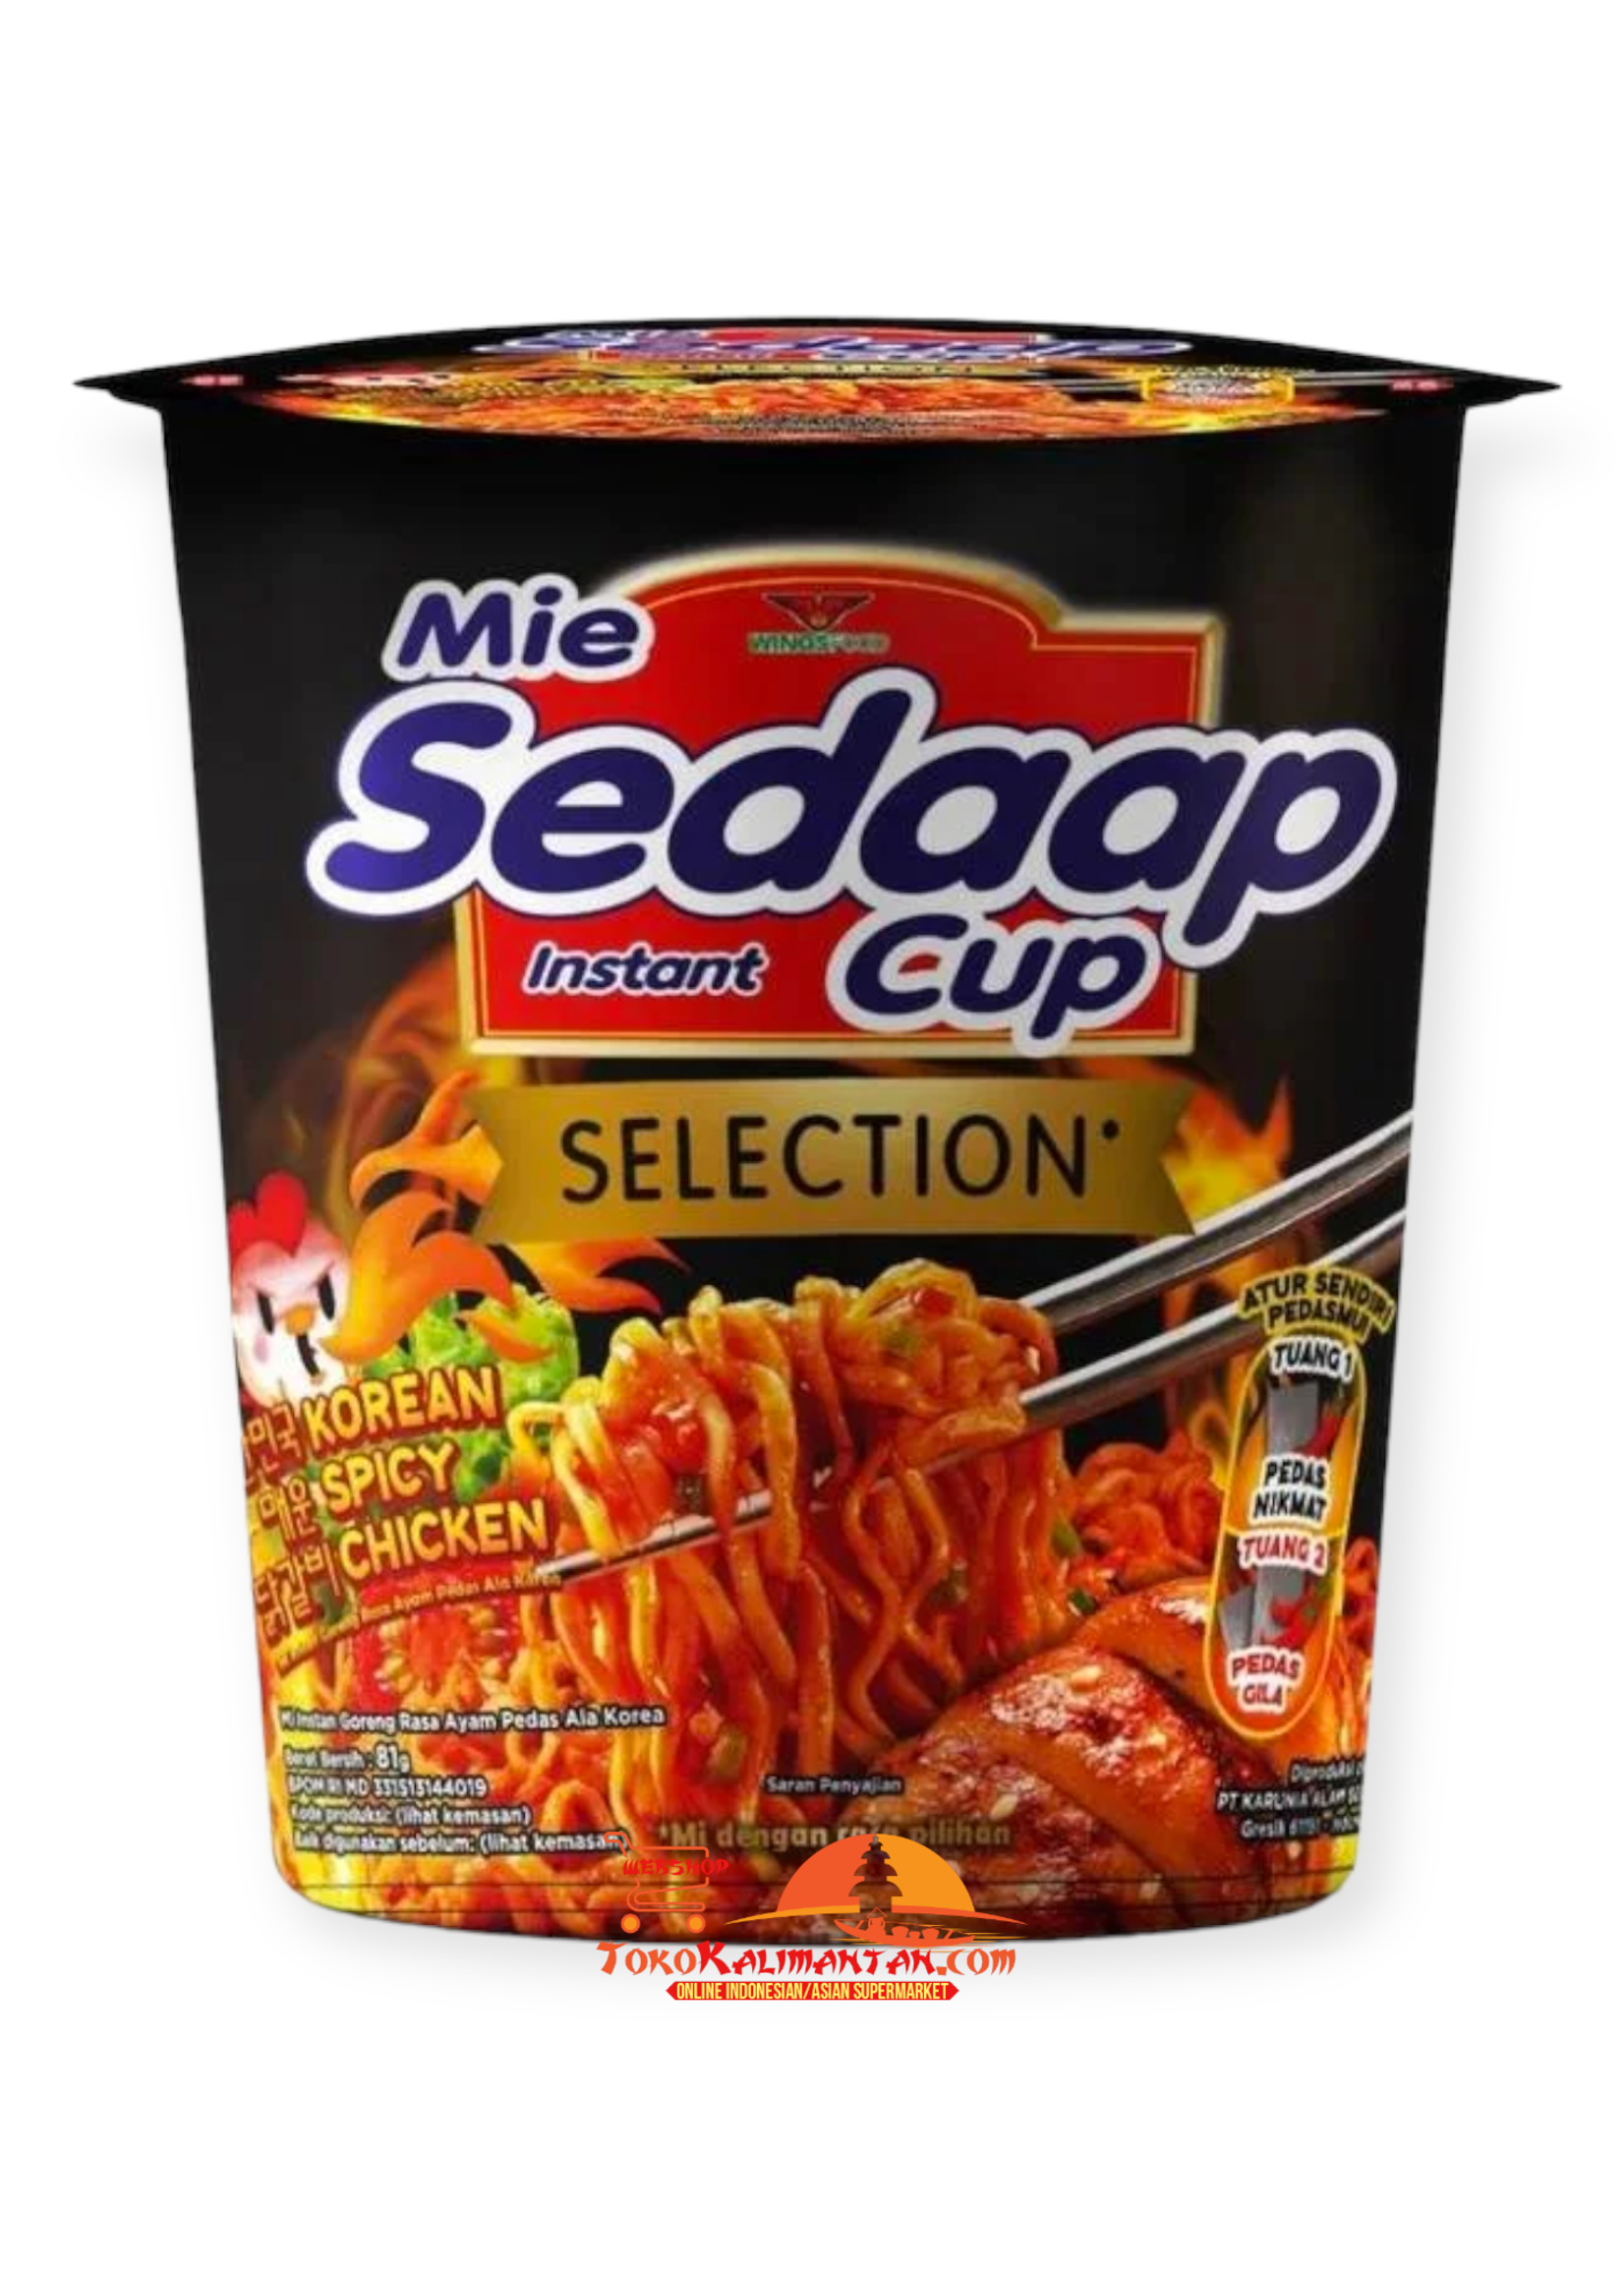 Mie sedaap cup Mie sedaap cup - rasa korean spicy chicken goreng